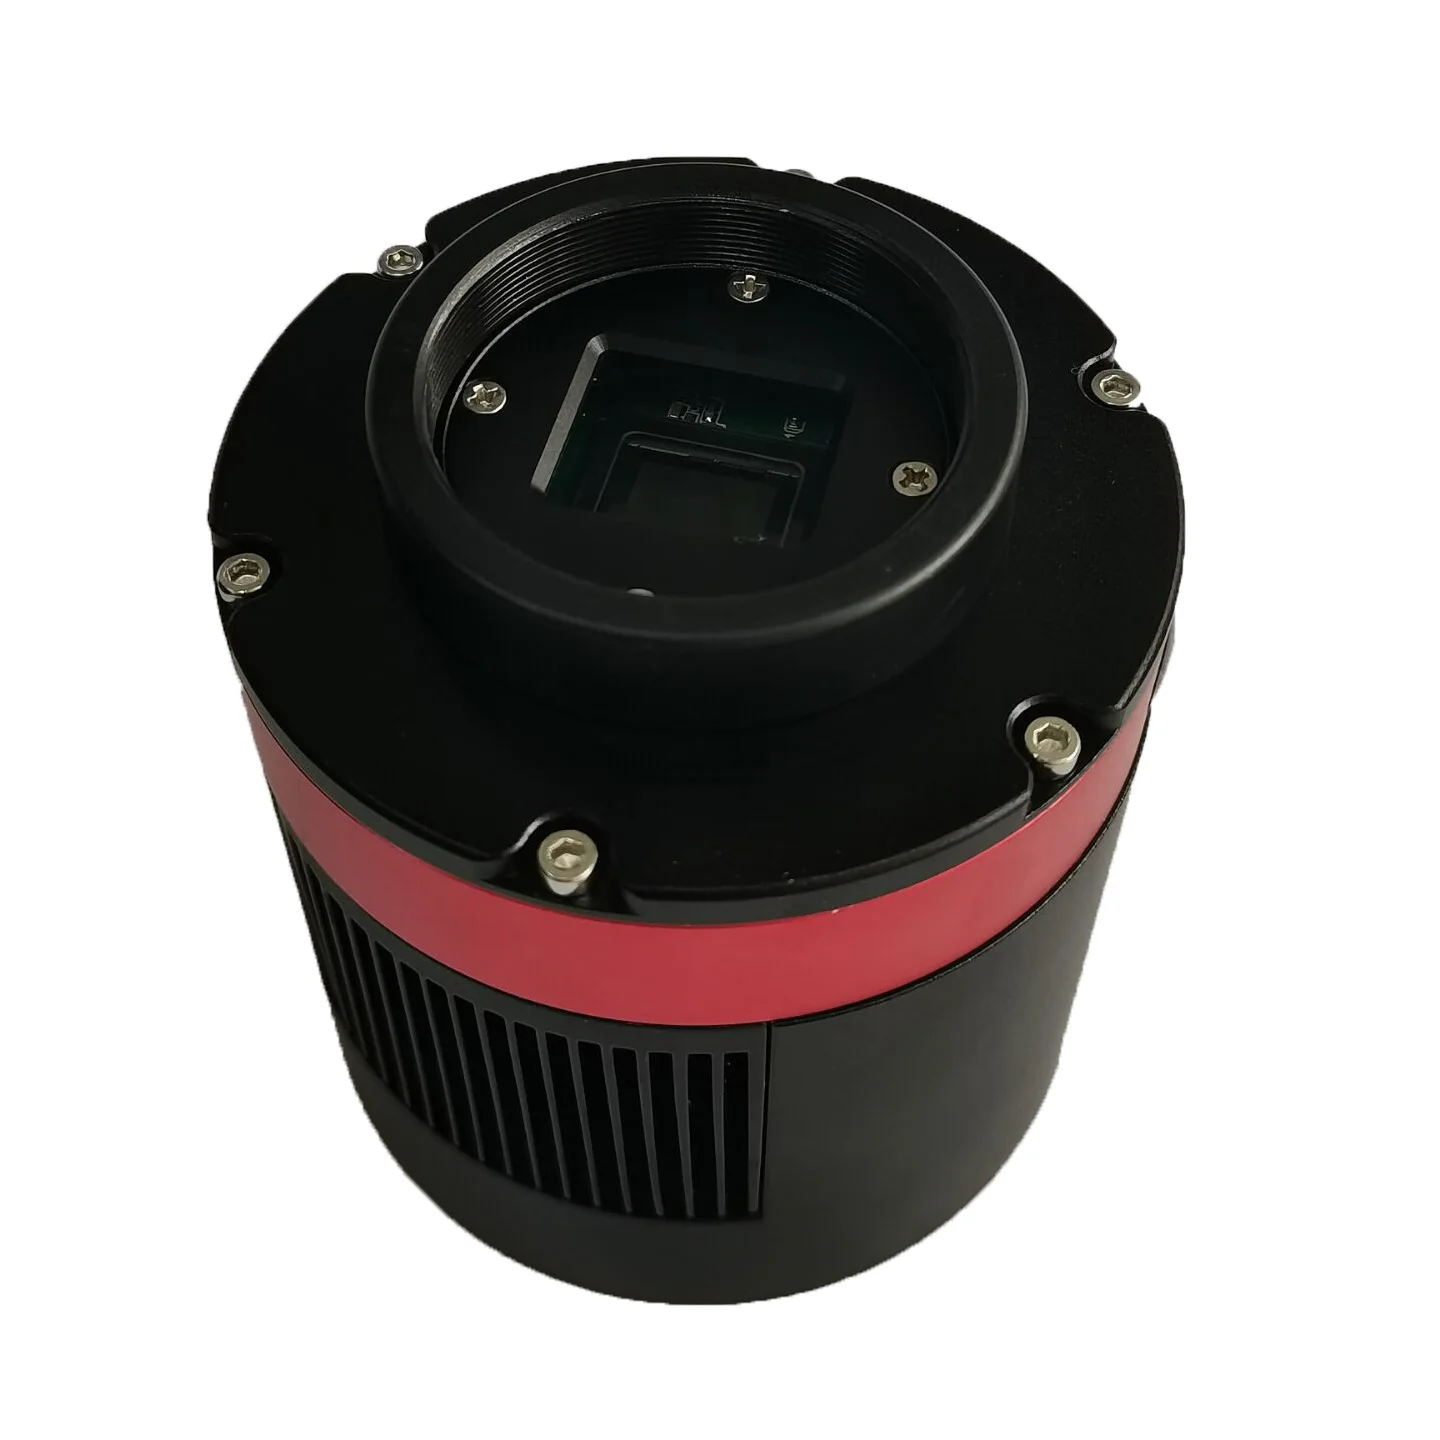 Astcampan AP533MM-PRO (моно / цветен) Камера с космическо охлаждане Deep Sky с 1 инчов сензор за изображения IMX533 при нисък шум & висока разделителна способност